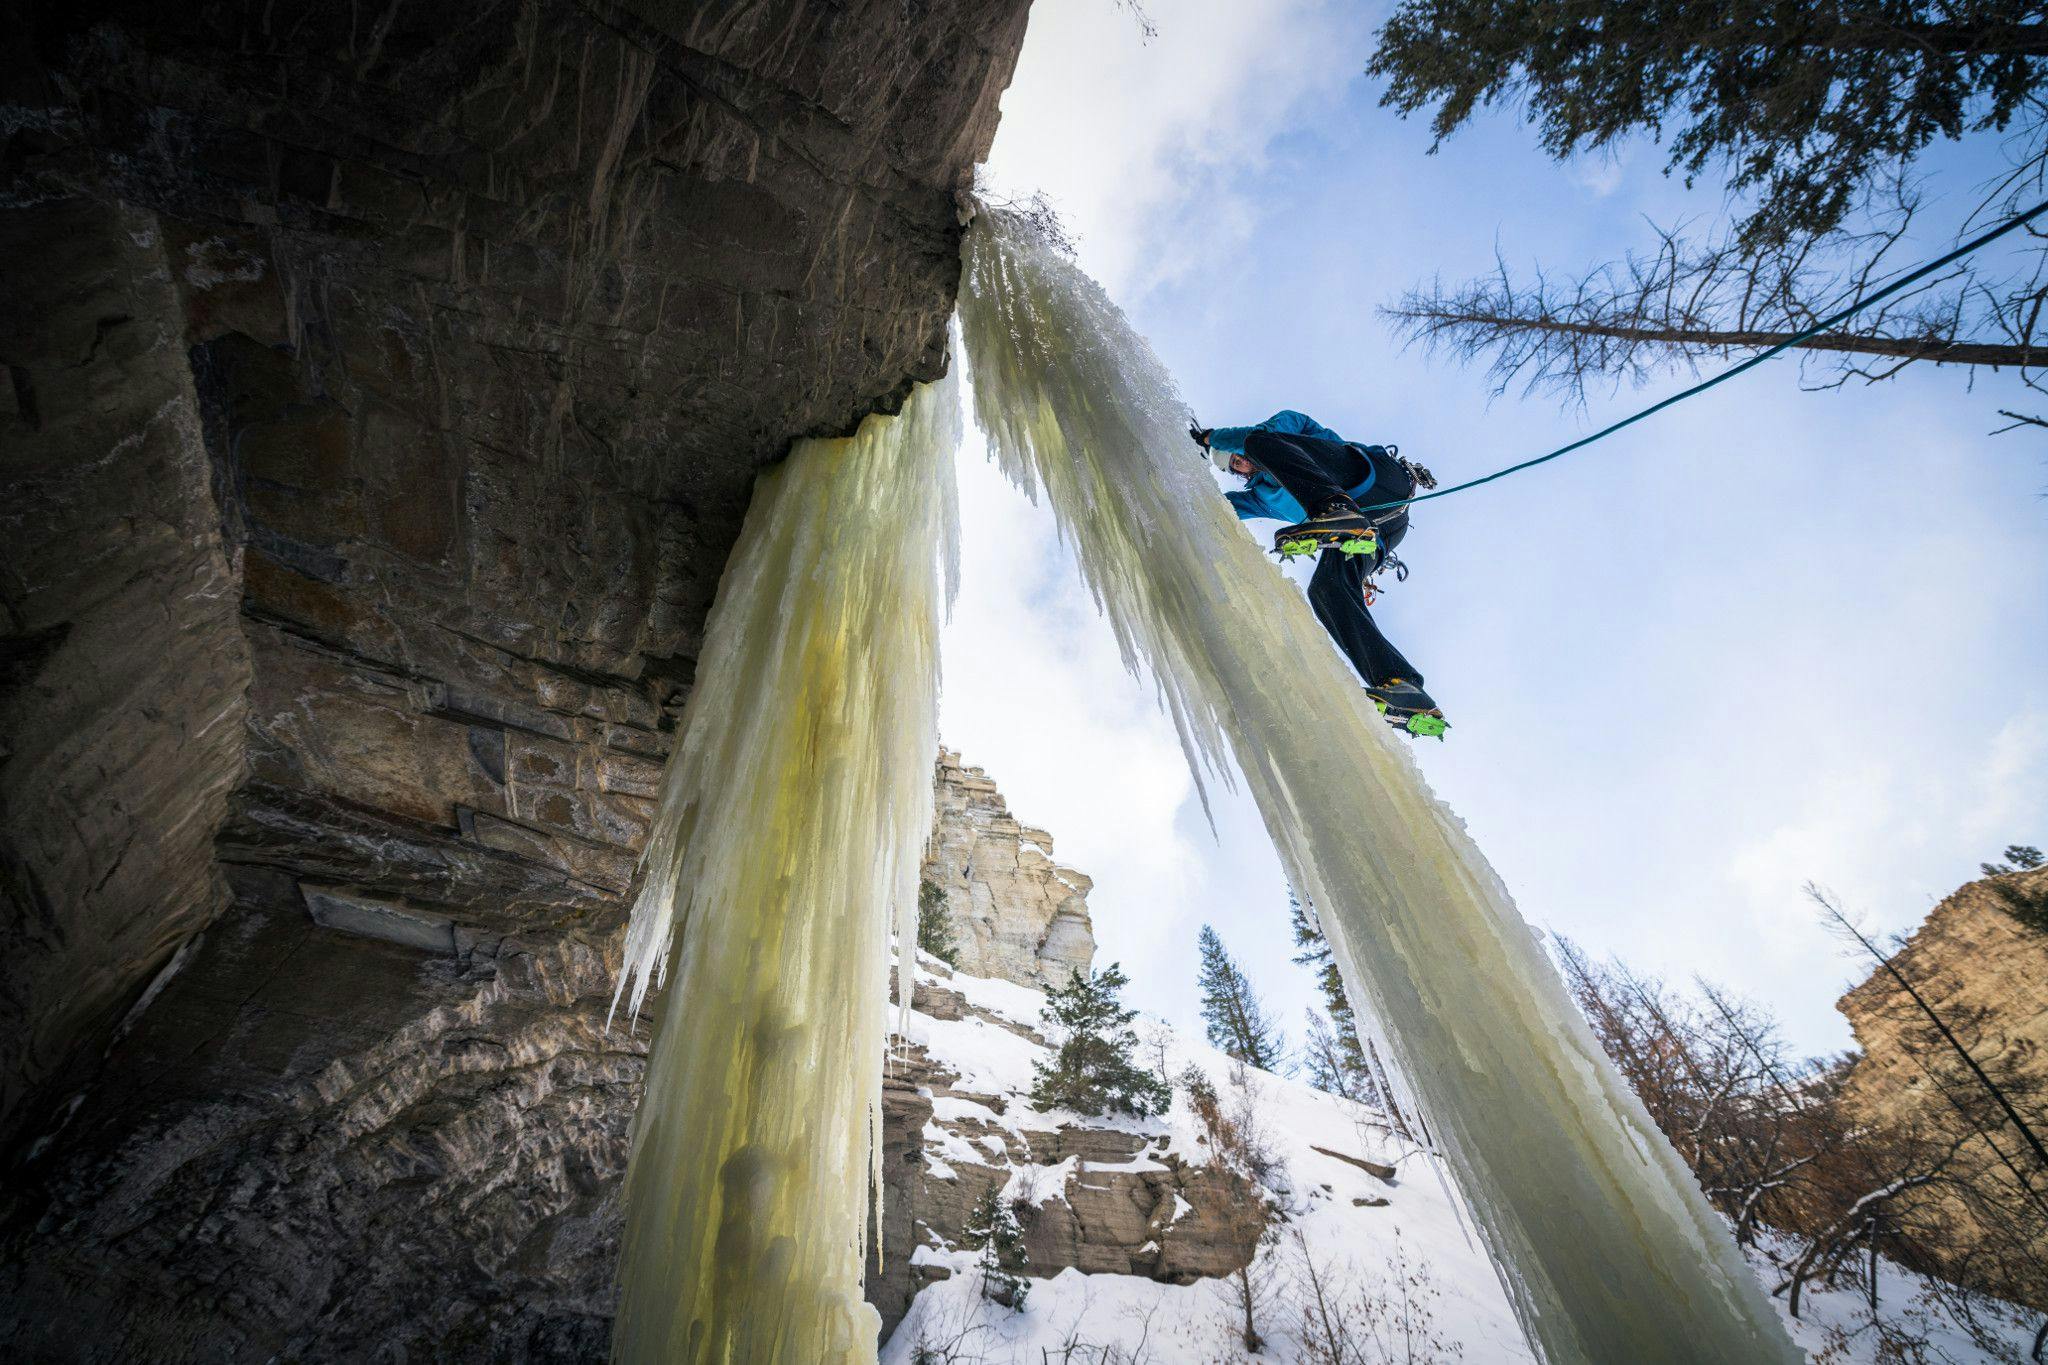  Une photo d'Andy Earl de Jackson Marvell escalade sur glace